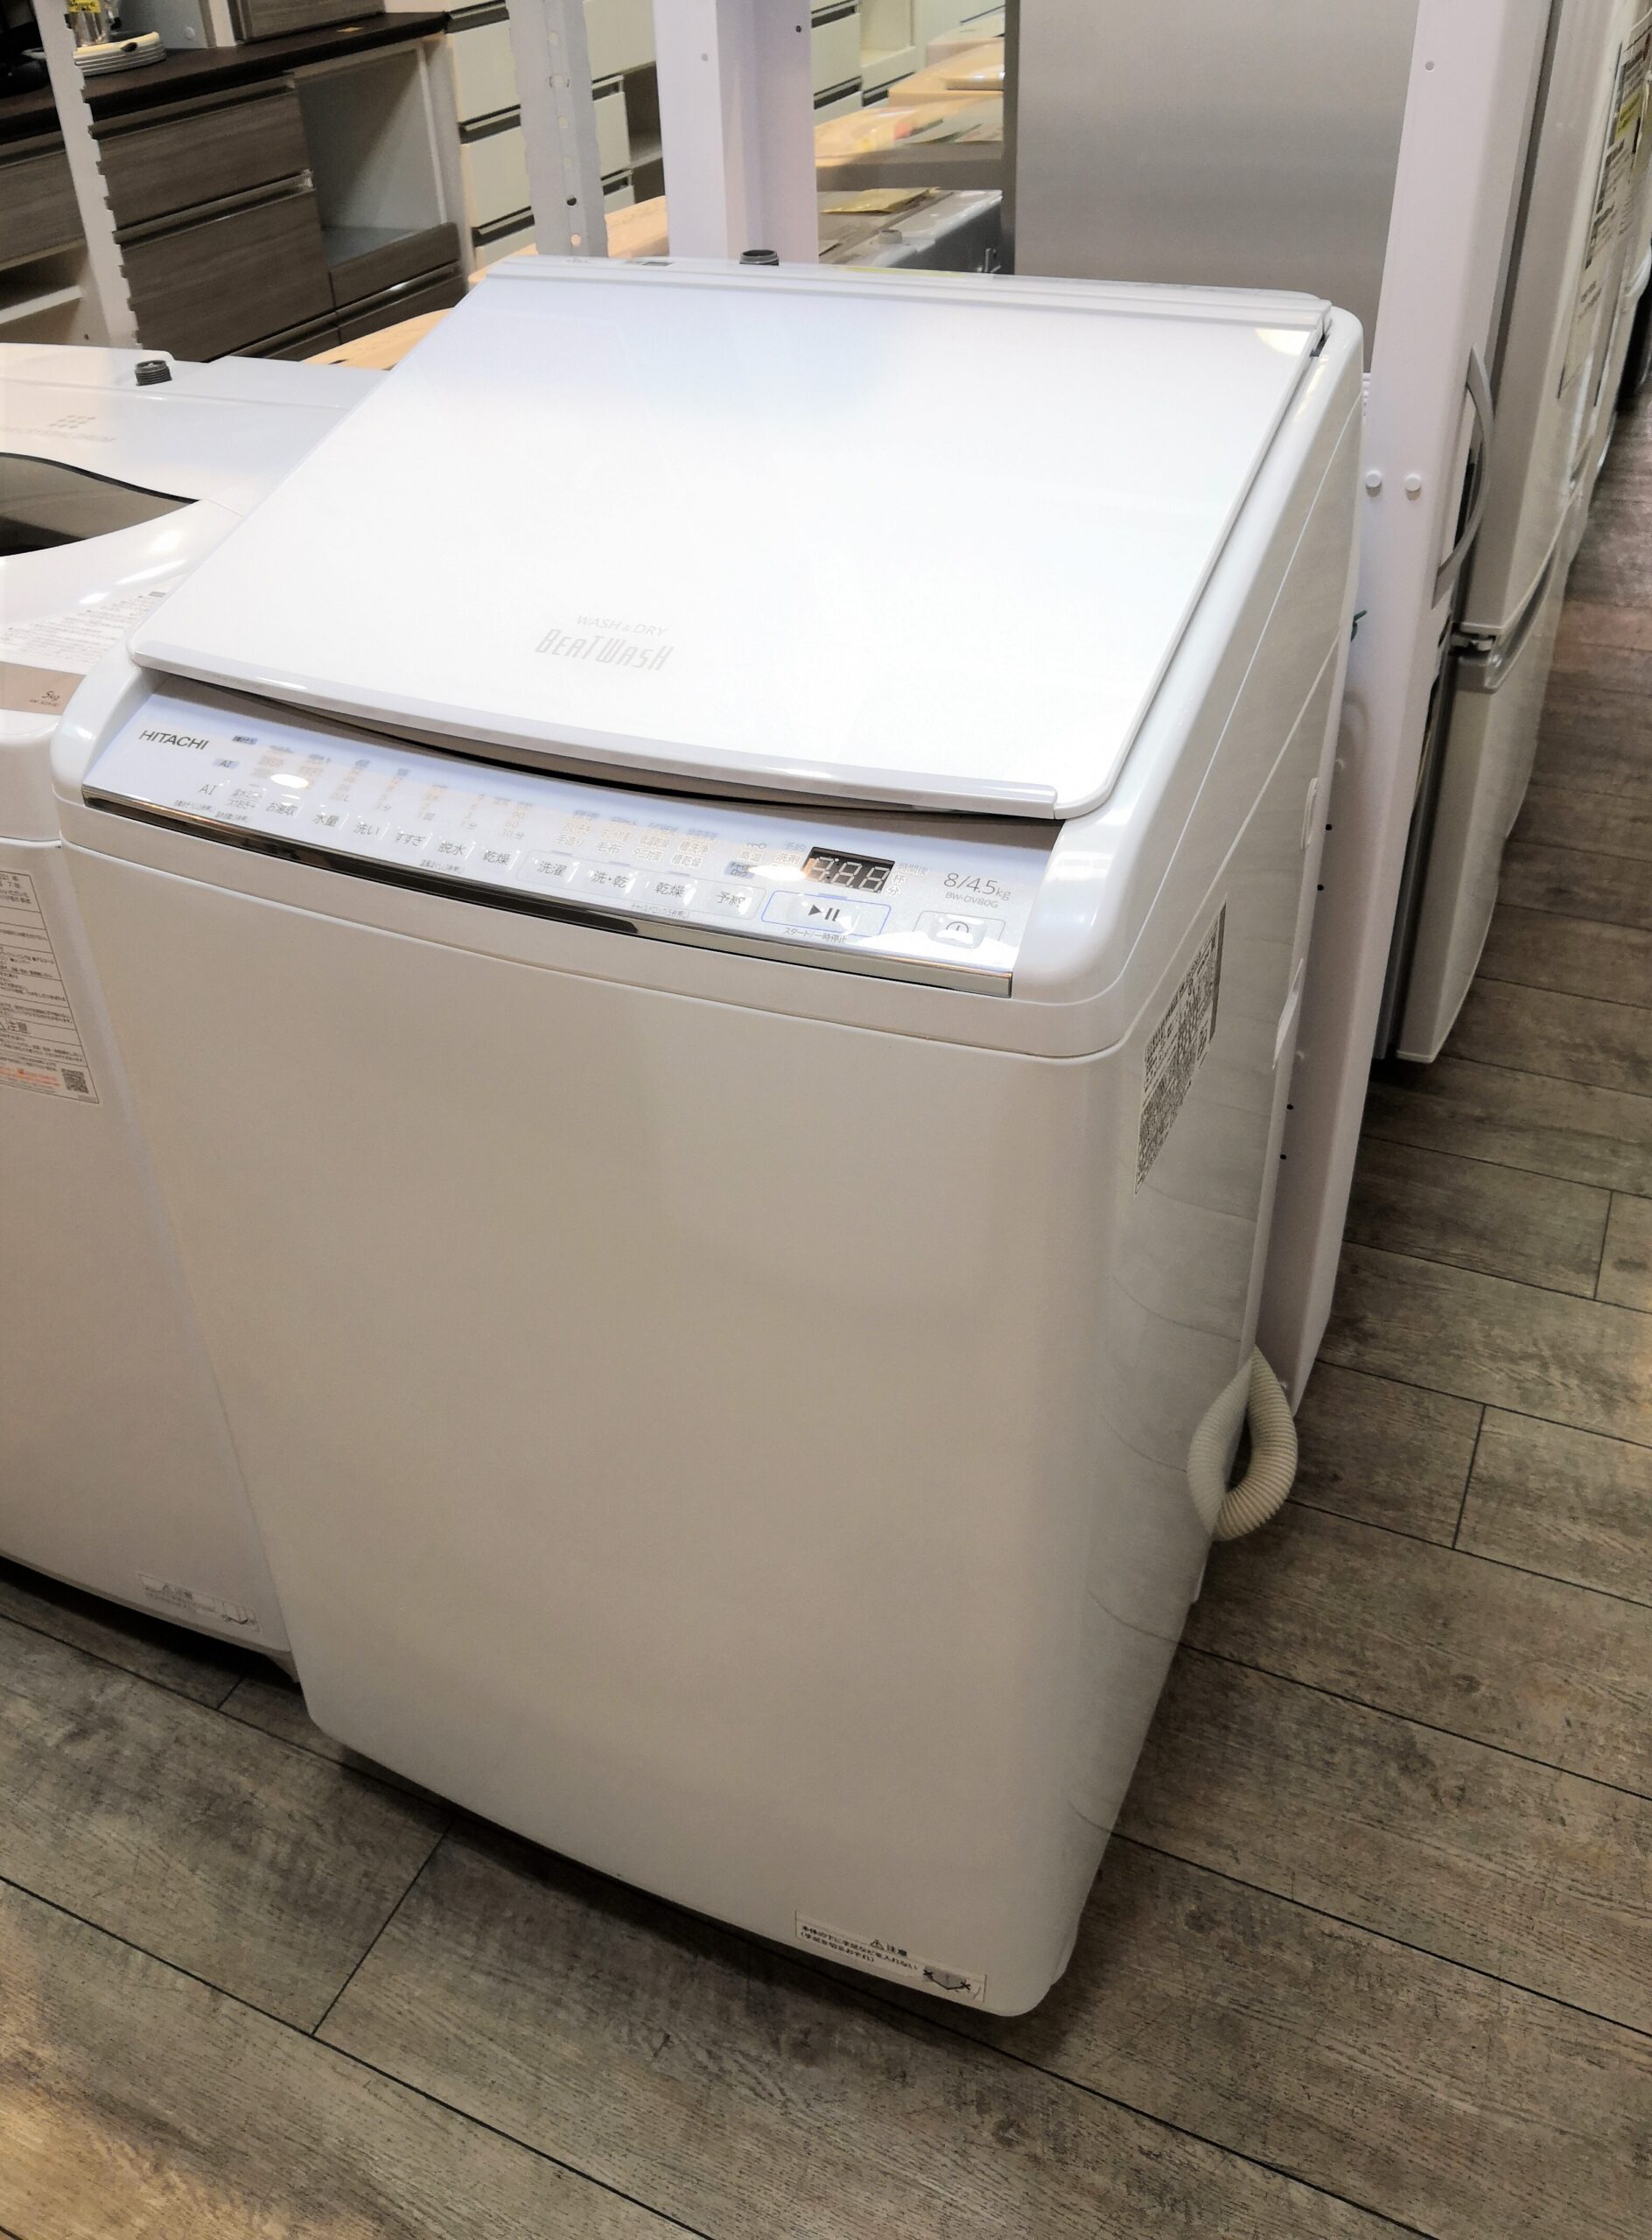 洗濯機】【日立】8.0kg 洗濯乾燥機 HITACHI 白い約束 NW-D8LX - 埼玉県 